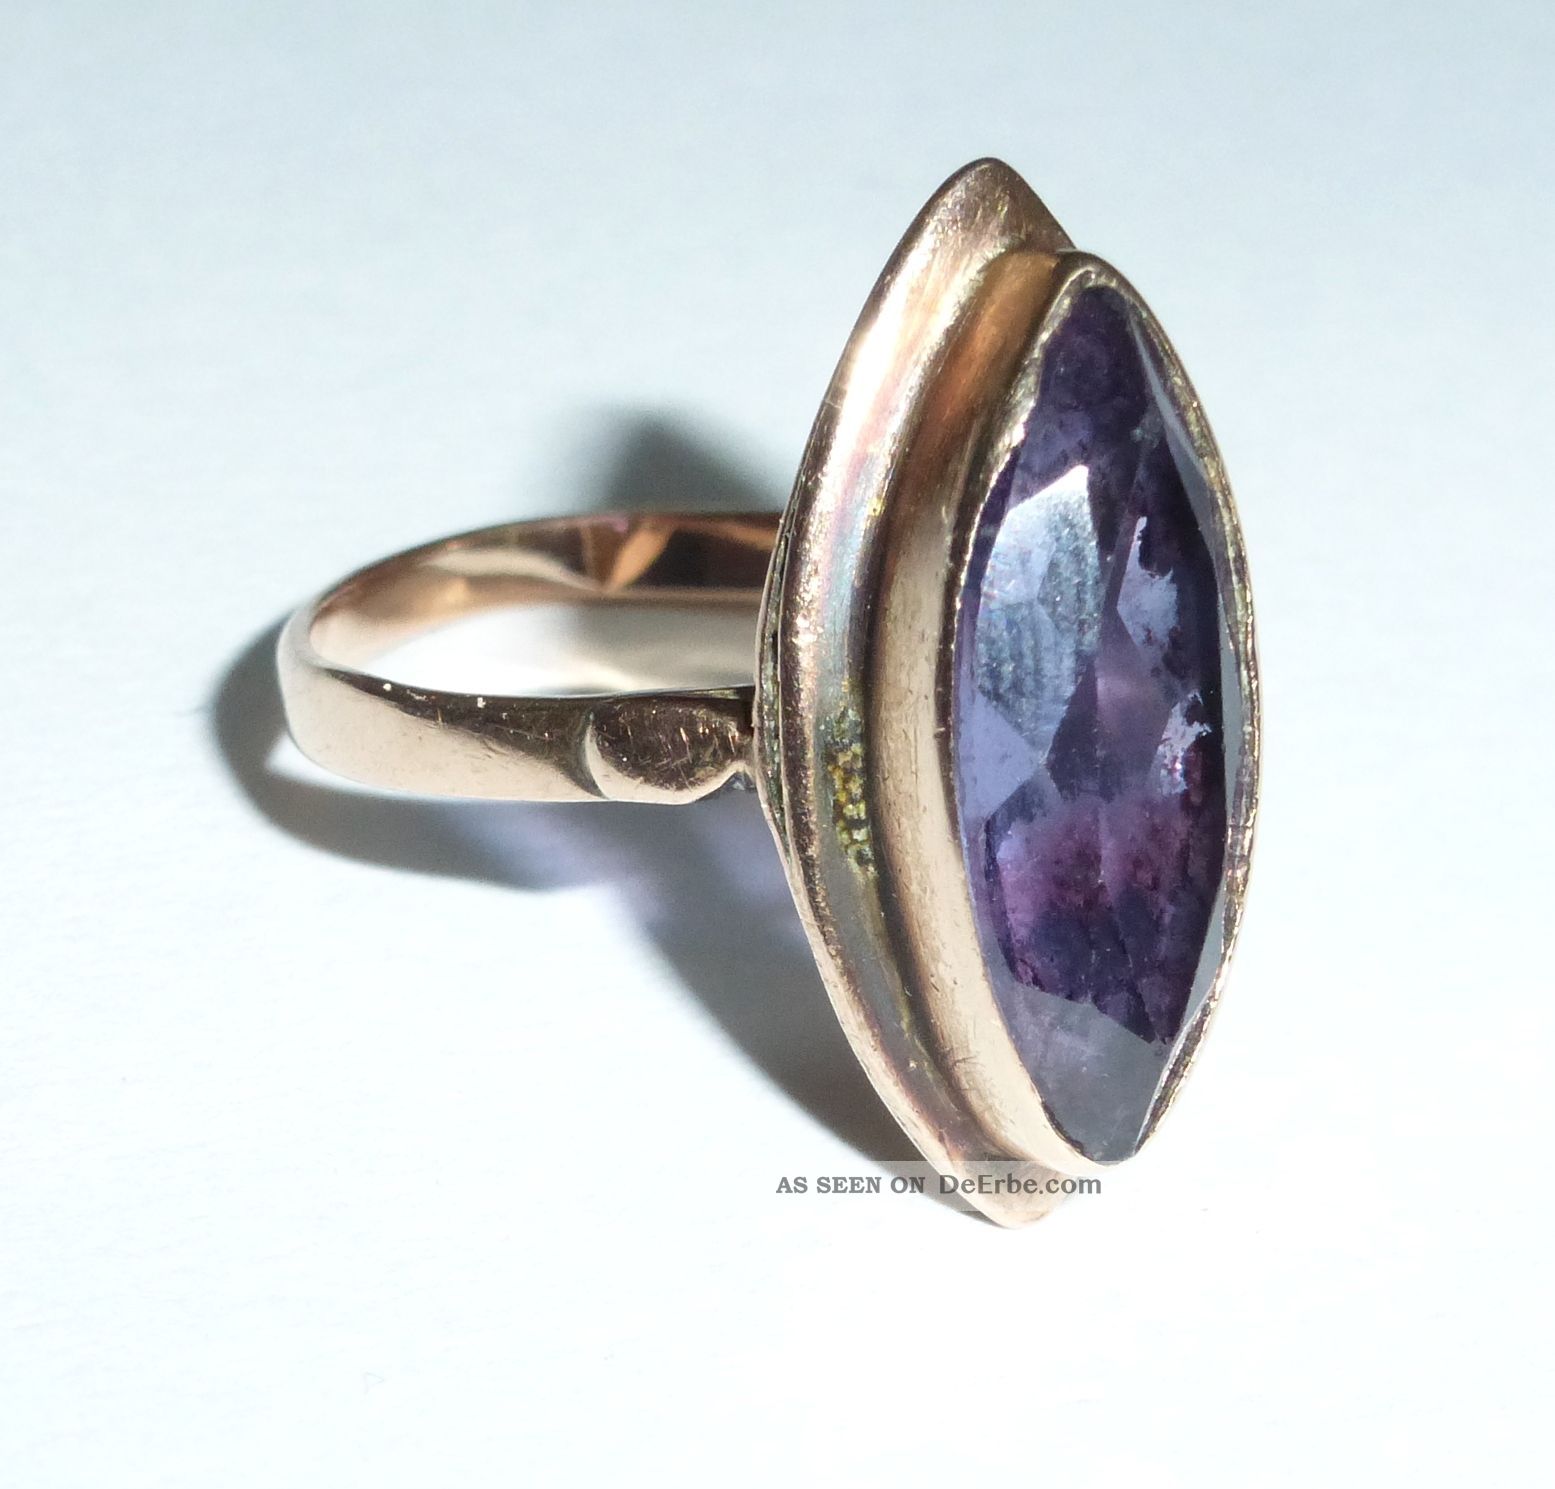 Hochwertiger Antikschmuck Ring Schmuck 750/18 Karat Gold Saphir Farbe Wechseln Ringe Bild